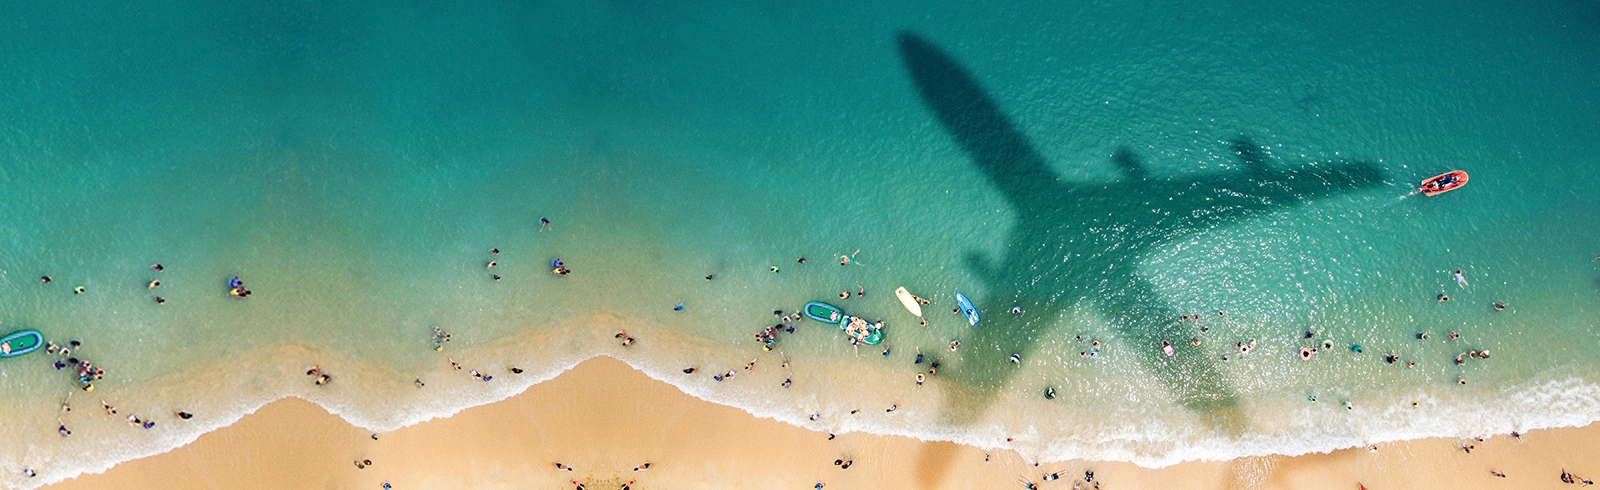 飛機的影子投射在陽光明媚、人多的海灘上